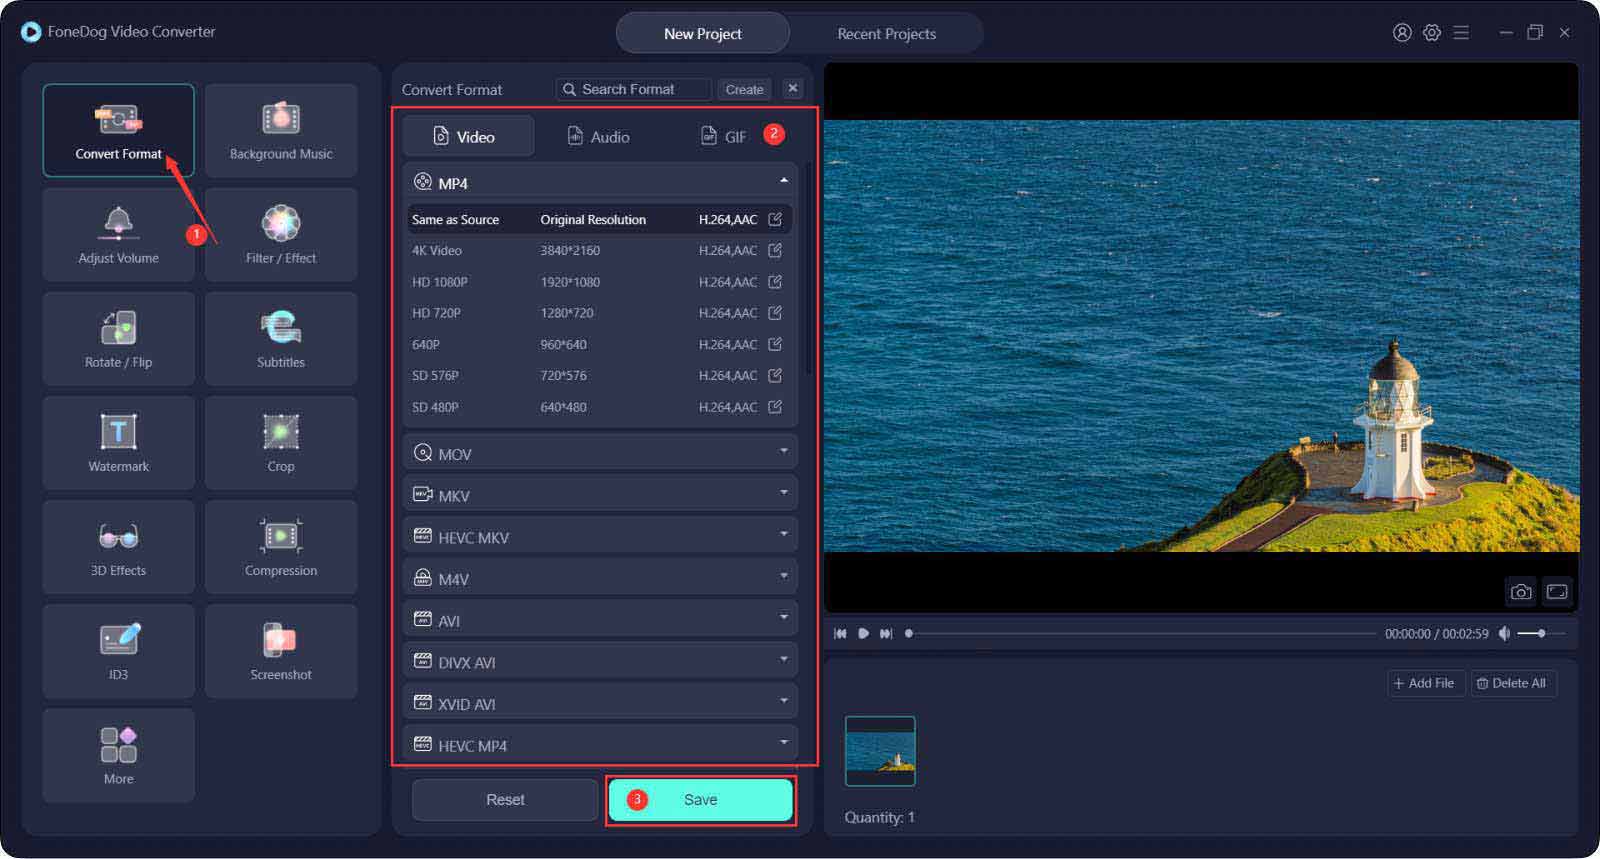 I migliori strumenti per modificare la risoluzione di un video: FoneDog Video Converter